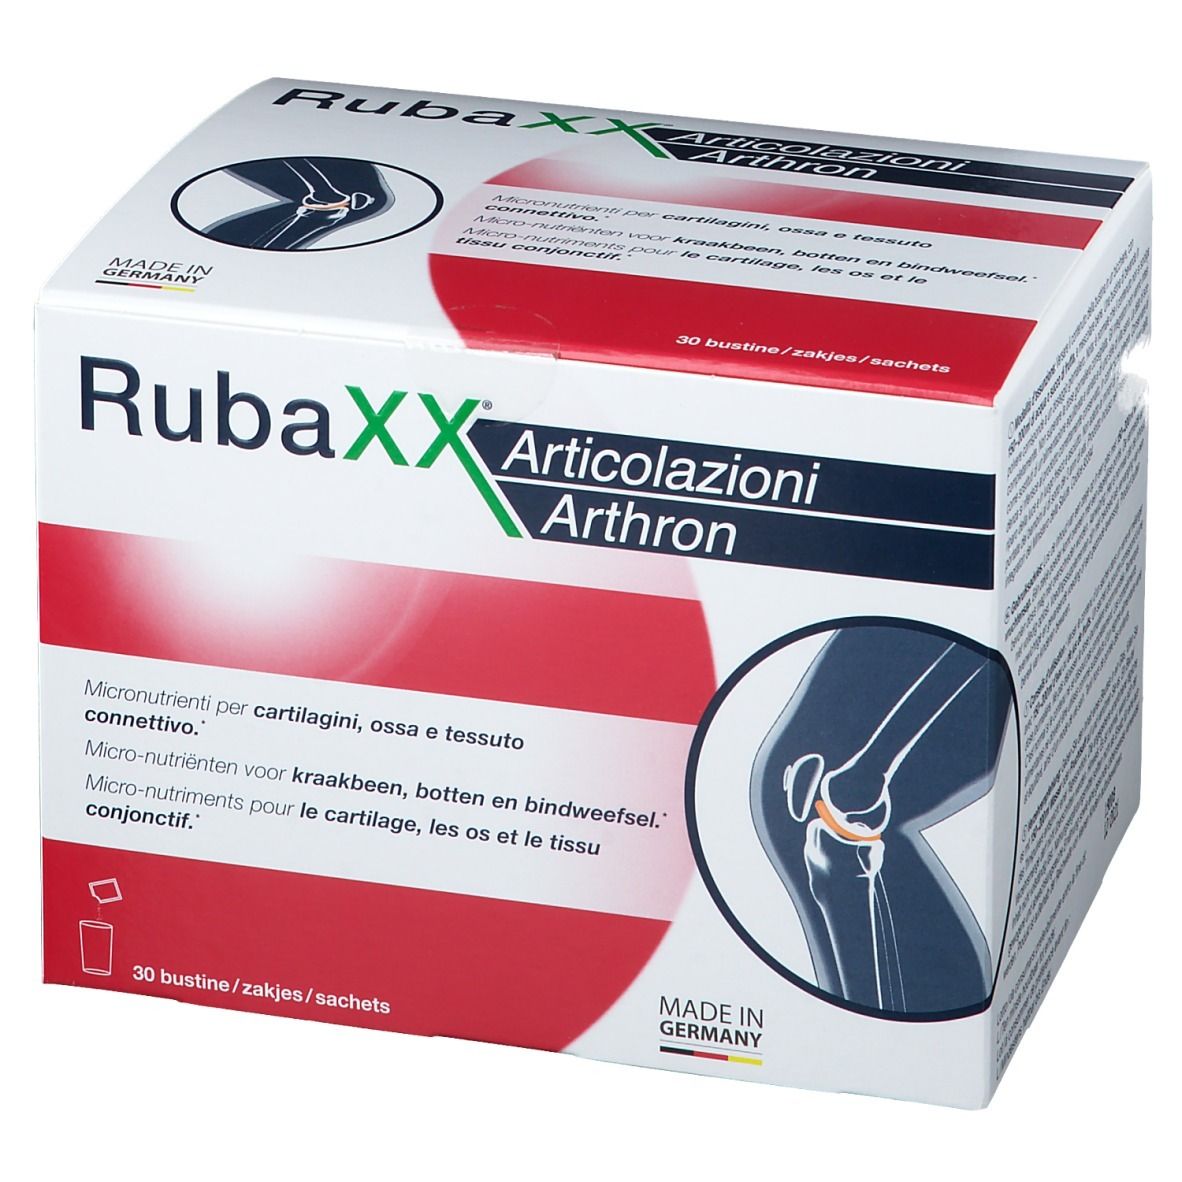 RubaXX® Articolazioni